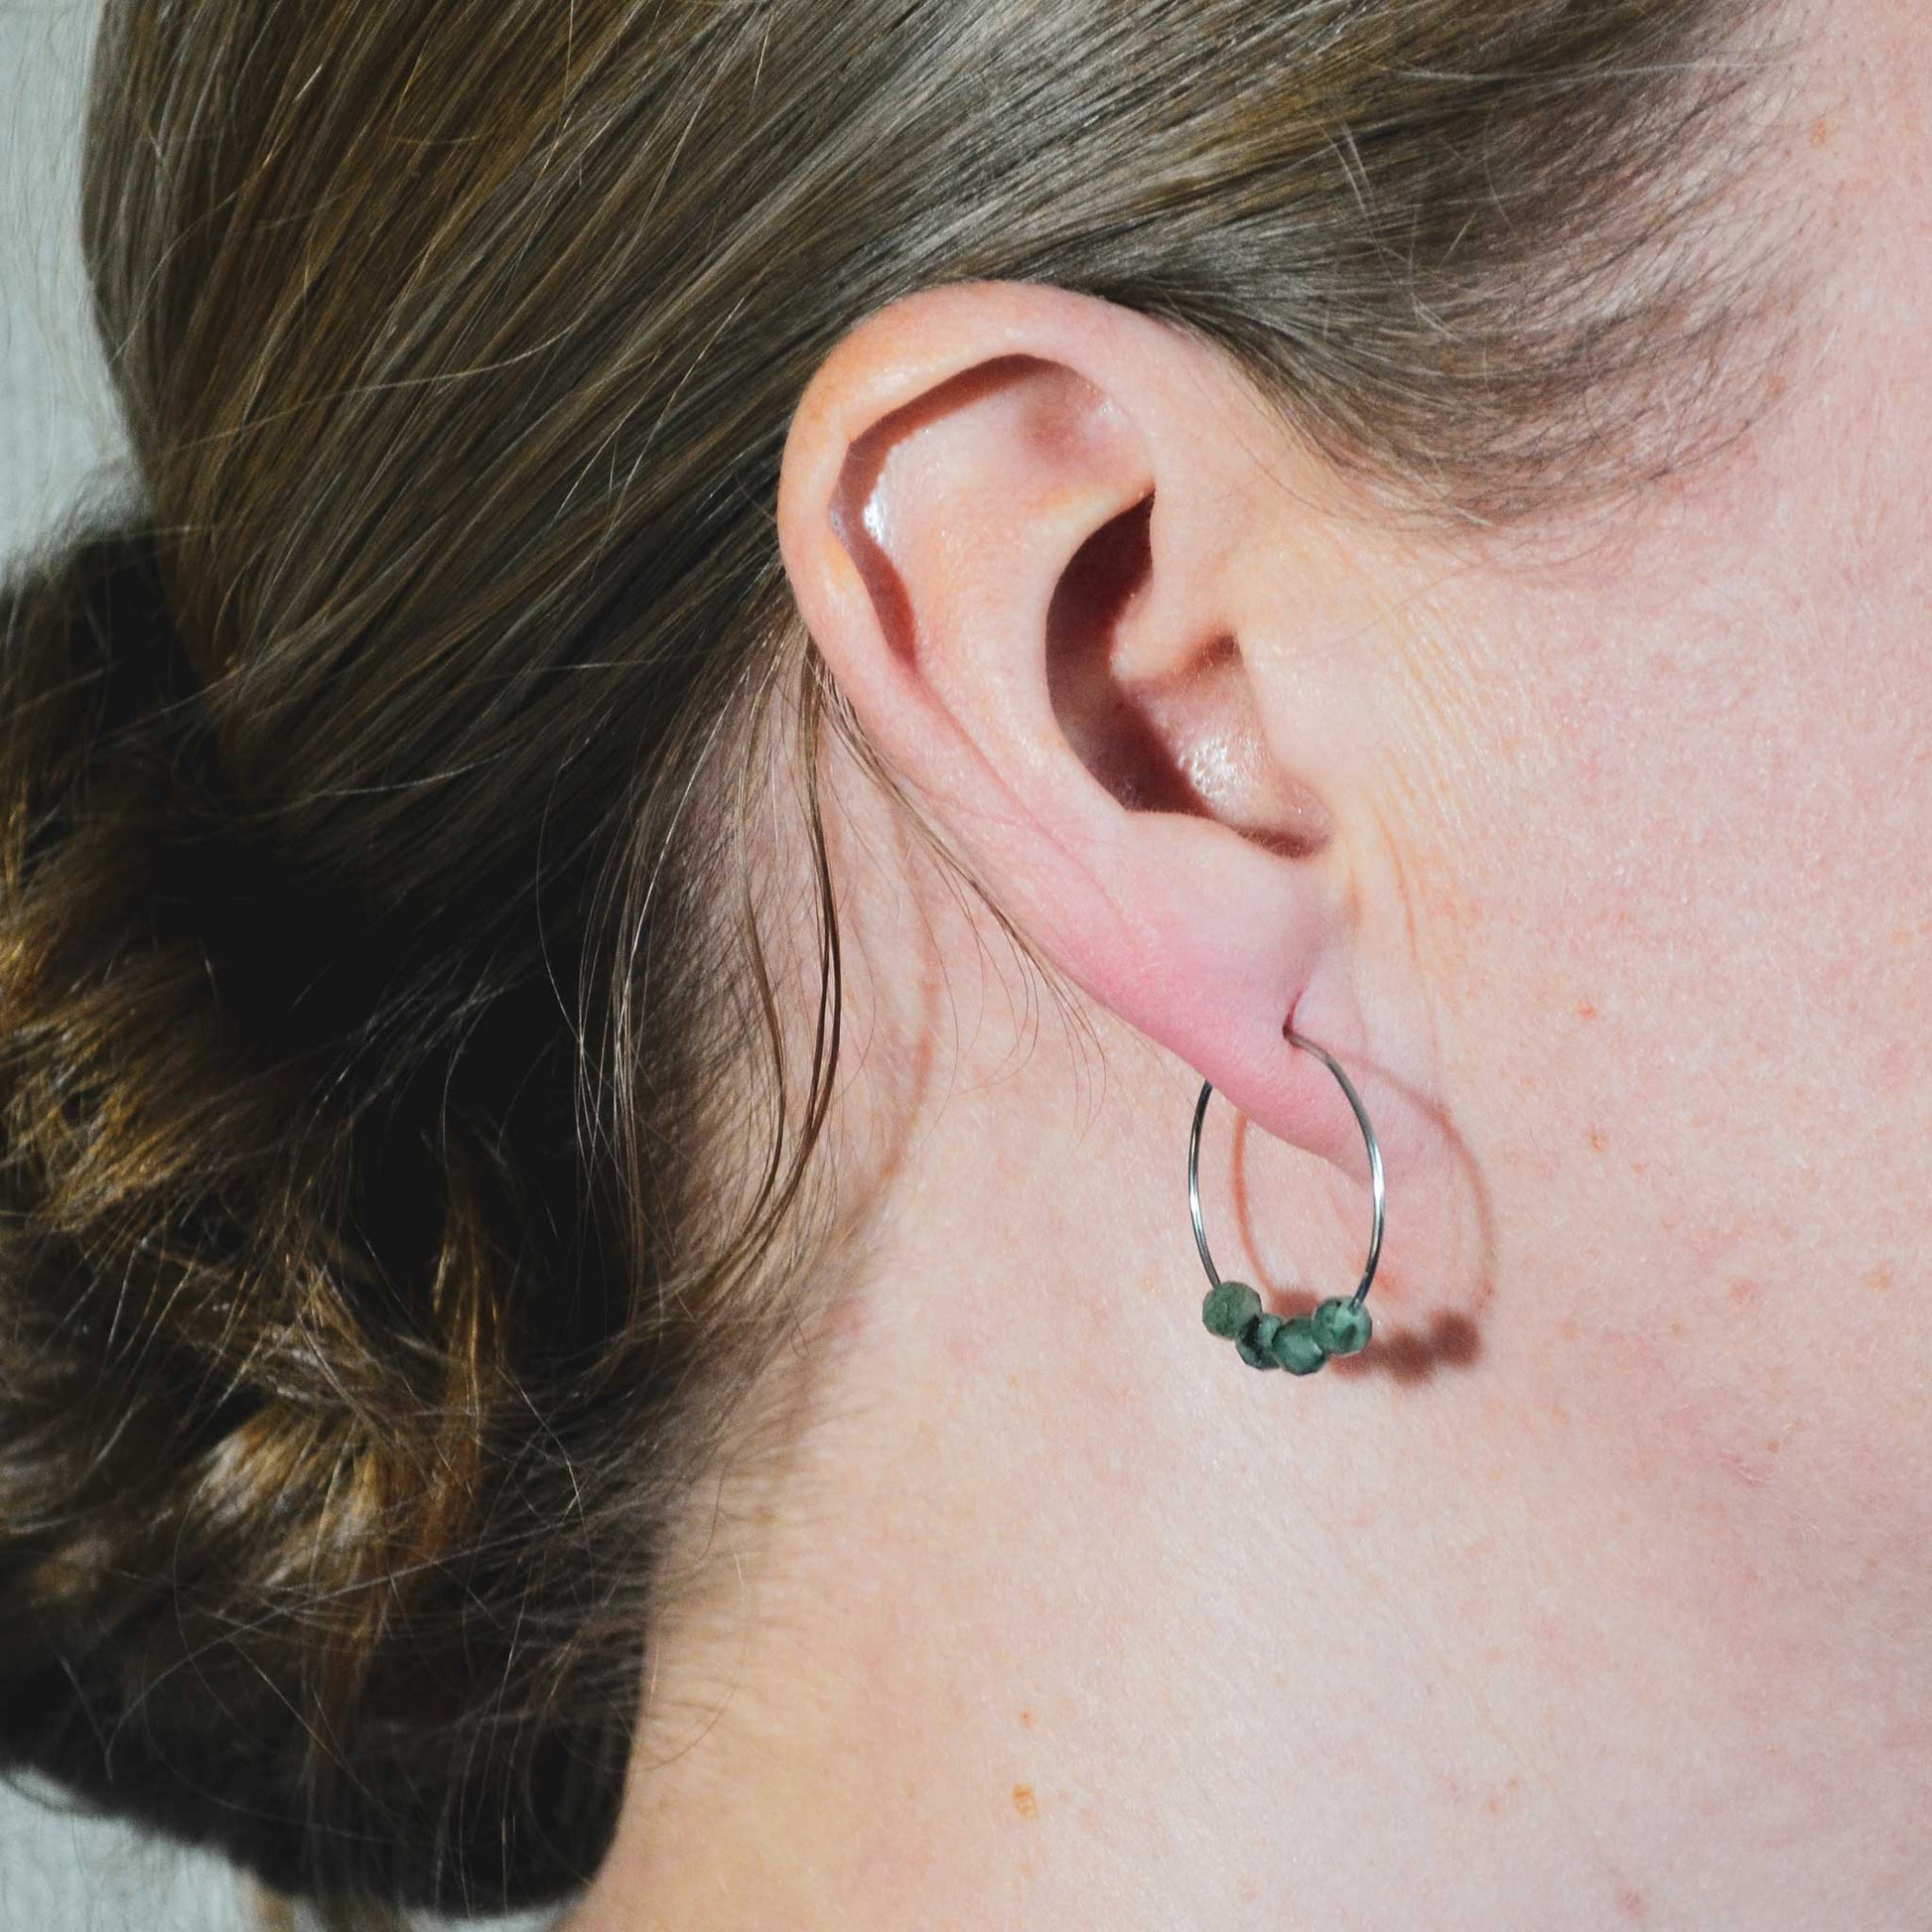 Woman wearing dark green Emerald hoop earrings in earlobe